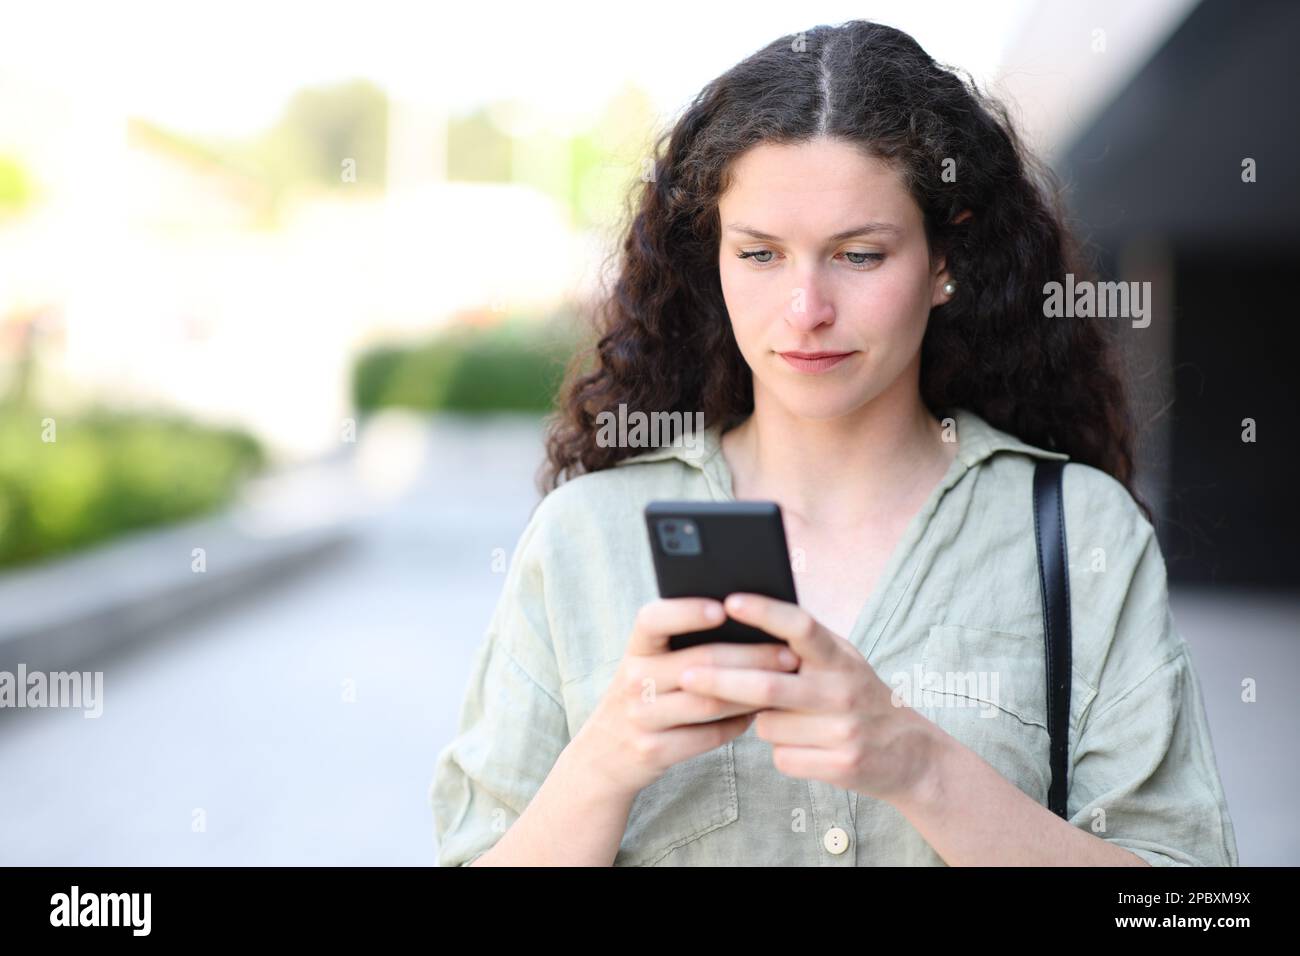 Ritratto di una donna che usa il telefono e cammina per strada Foto Stock